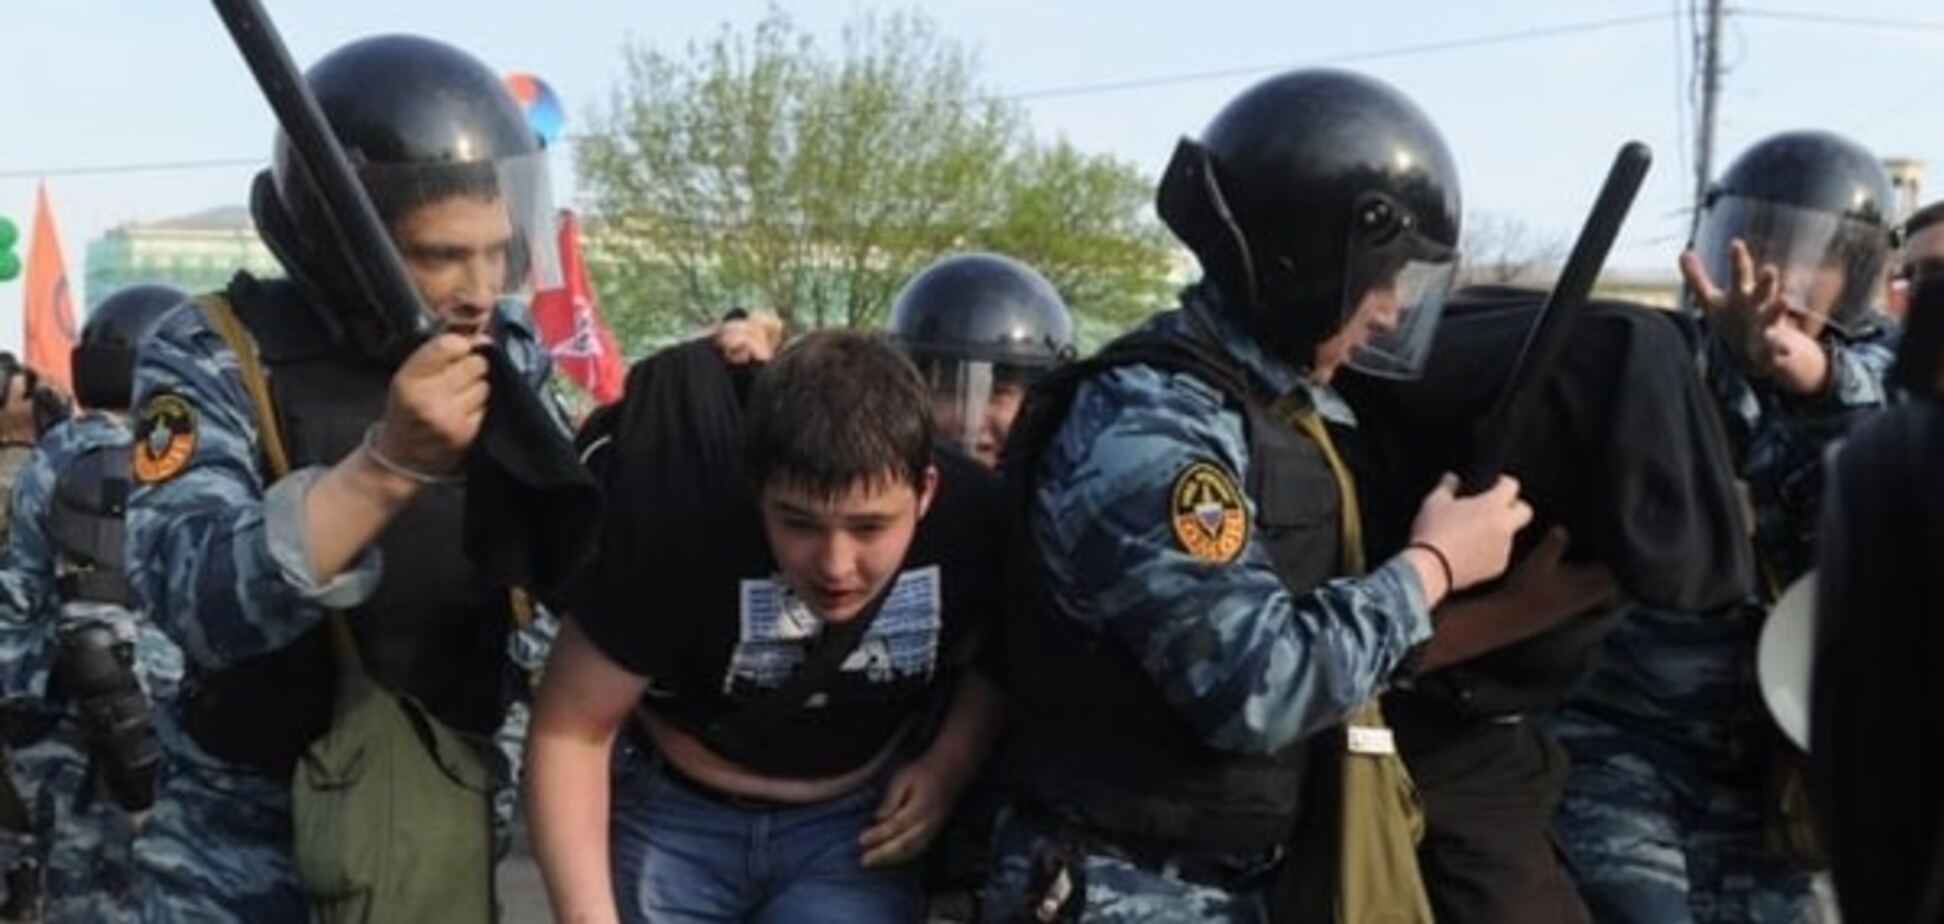 'Було дуже страшно': у Москві натовп ОМОНу побив дітей на фестивалі. Опубліковані фото і відео